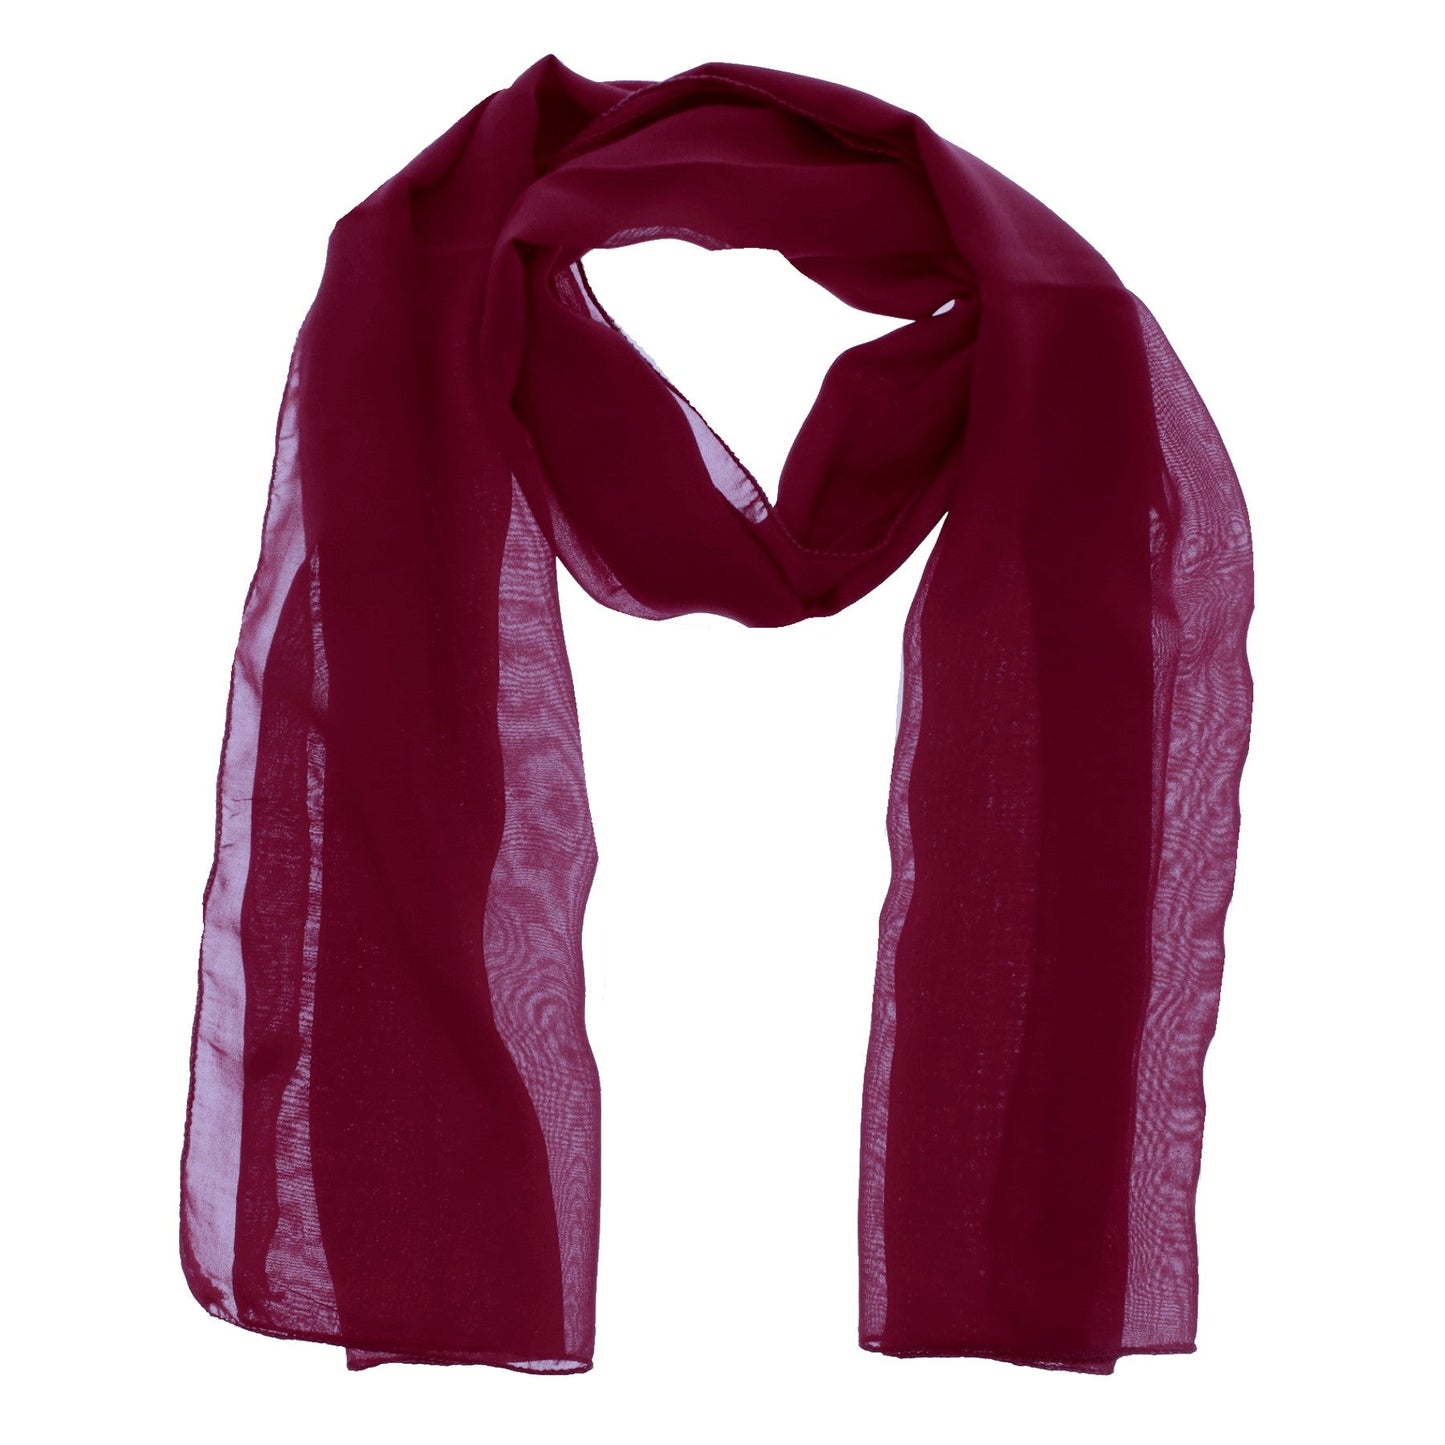 Chiffon scarf 180 x 70 cm by WESTEND CHOICE Scarves & Shawls all scarves, chiffon scarves, plain chiffon scarves, women